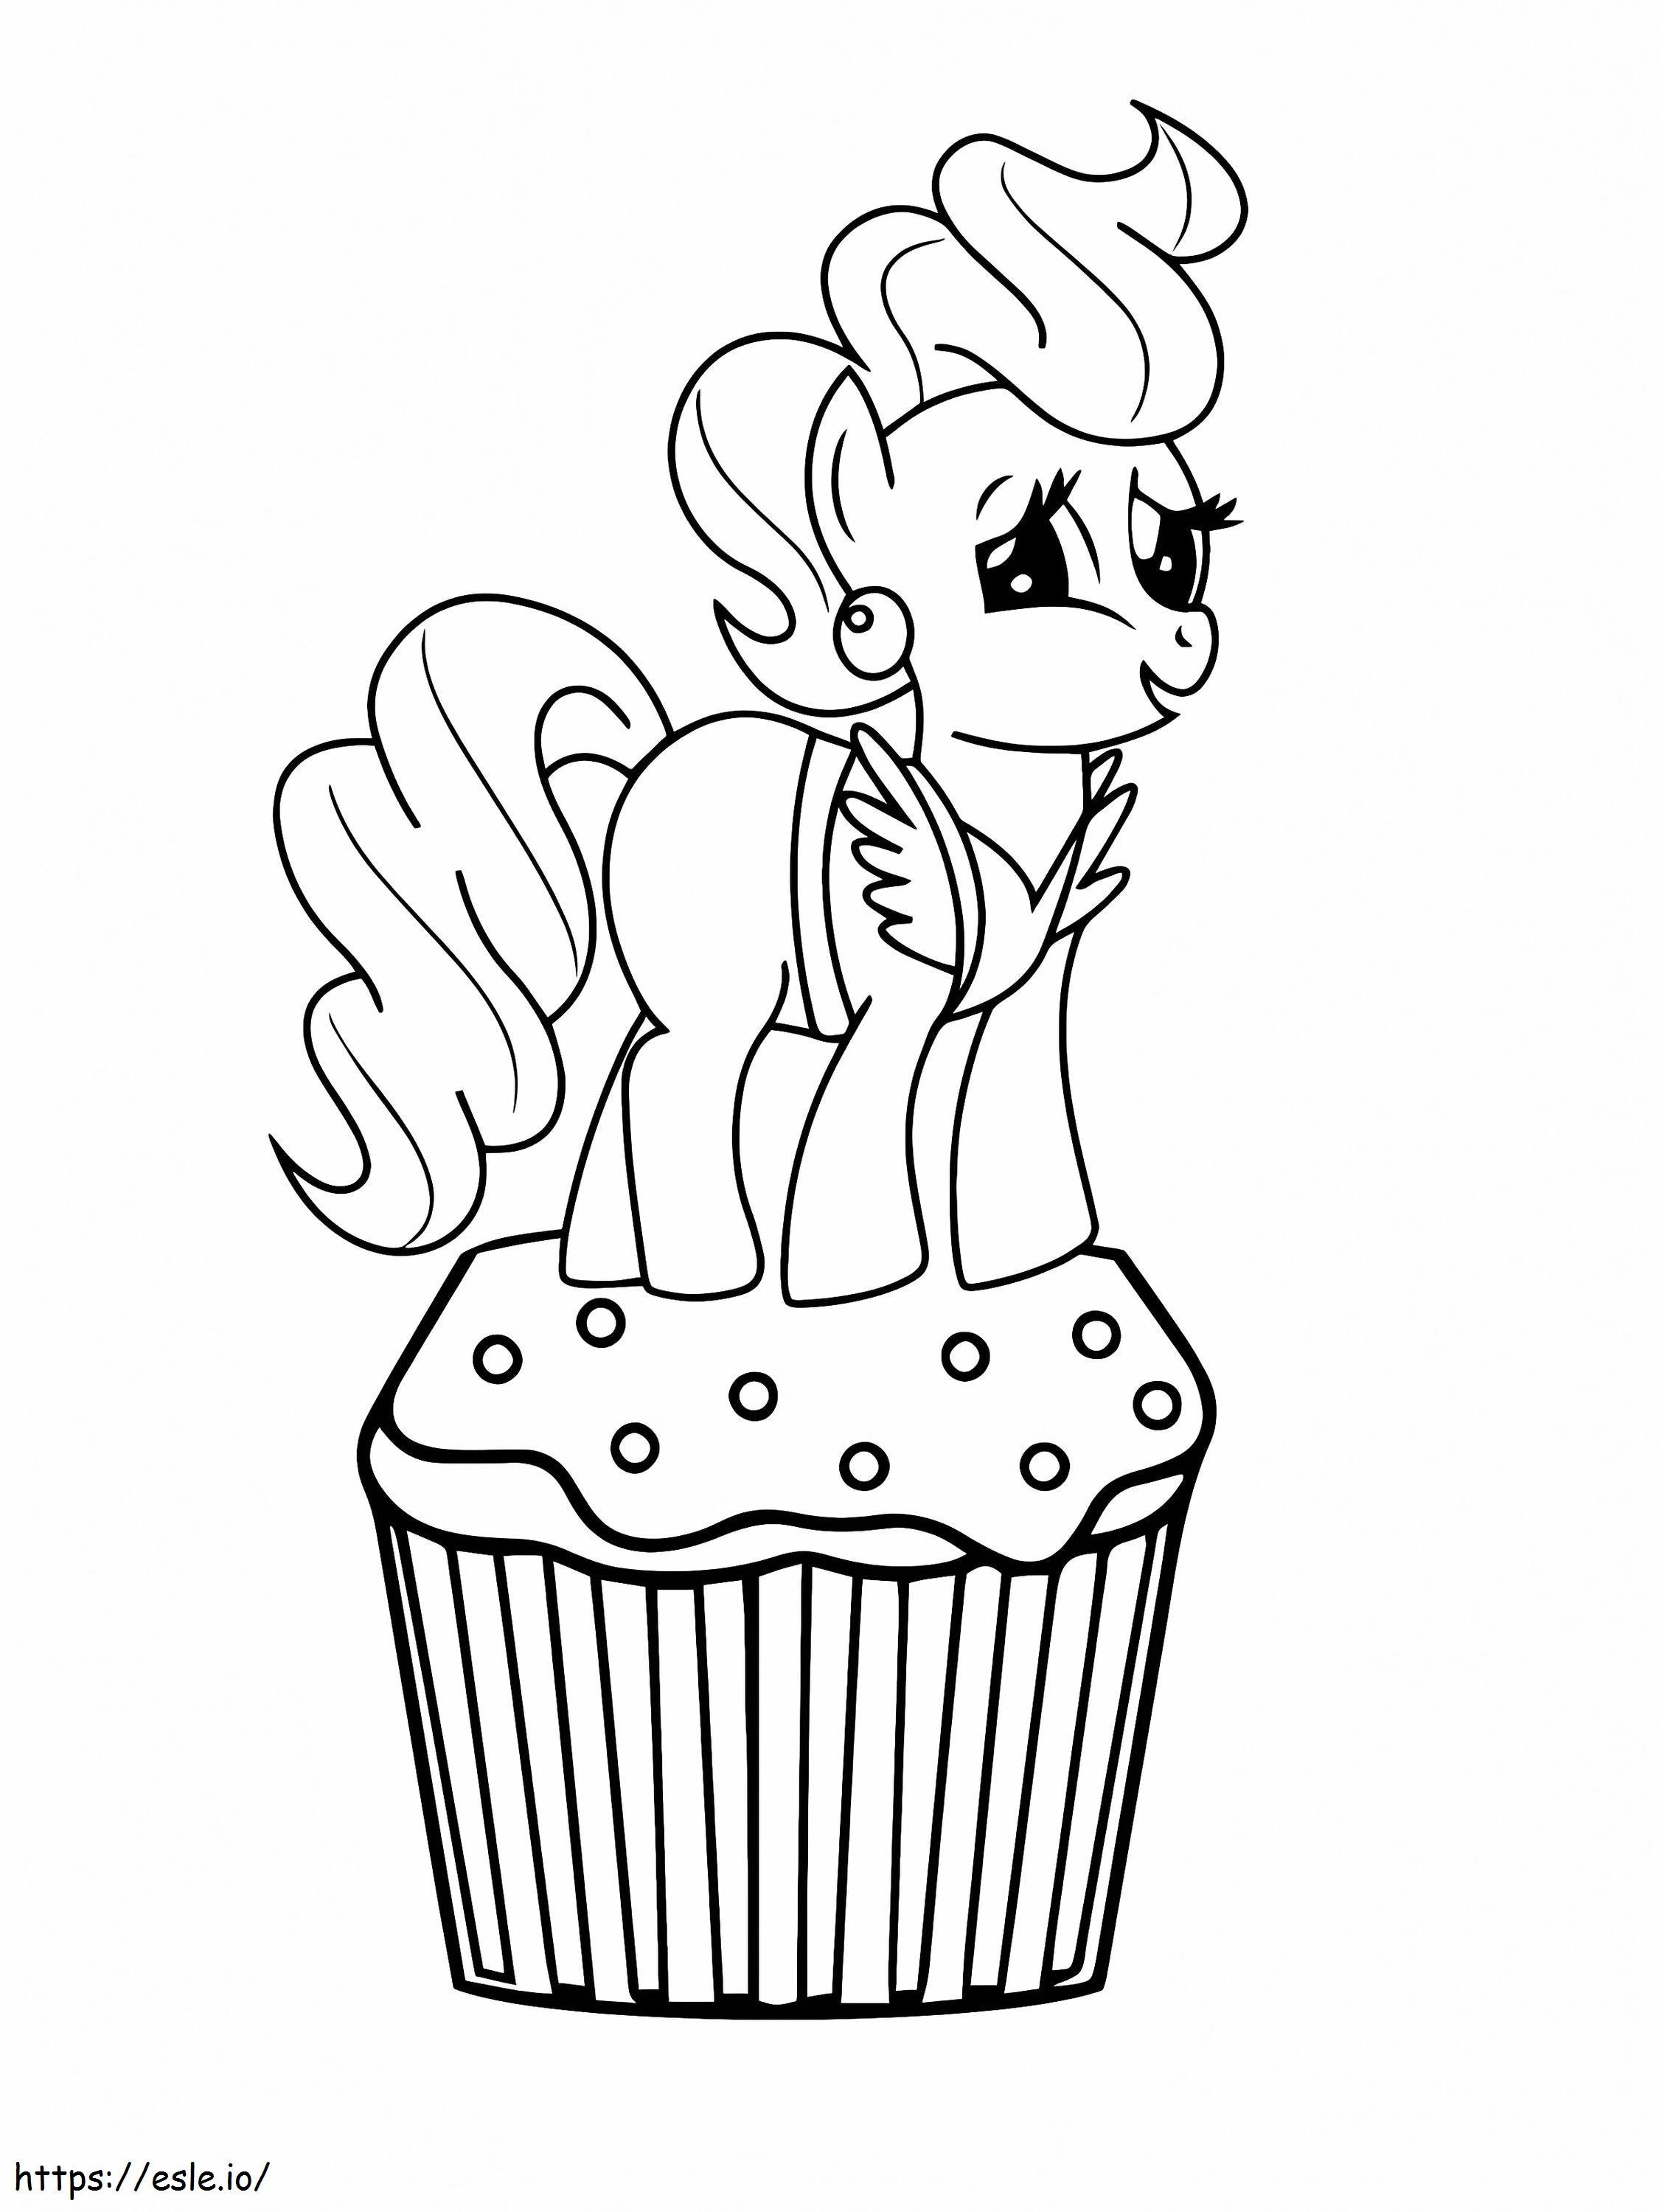 Mrs. Cake auf dem Cupcake in My Little Pony ausmalbilder